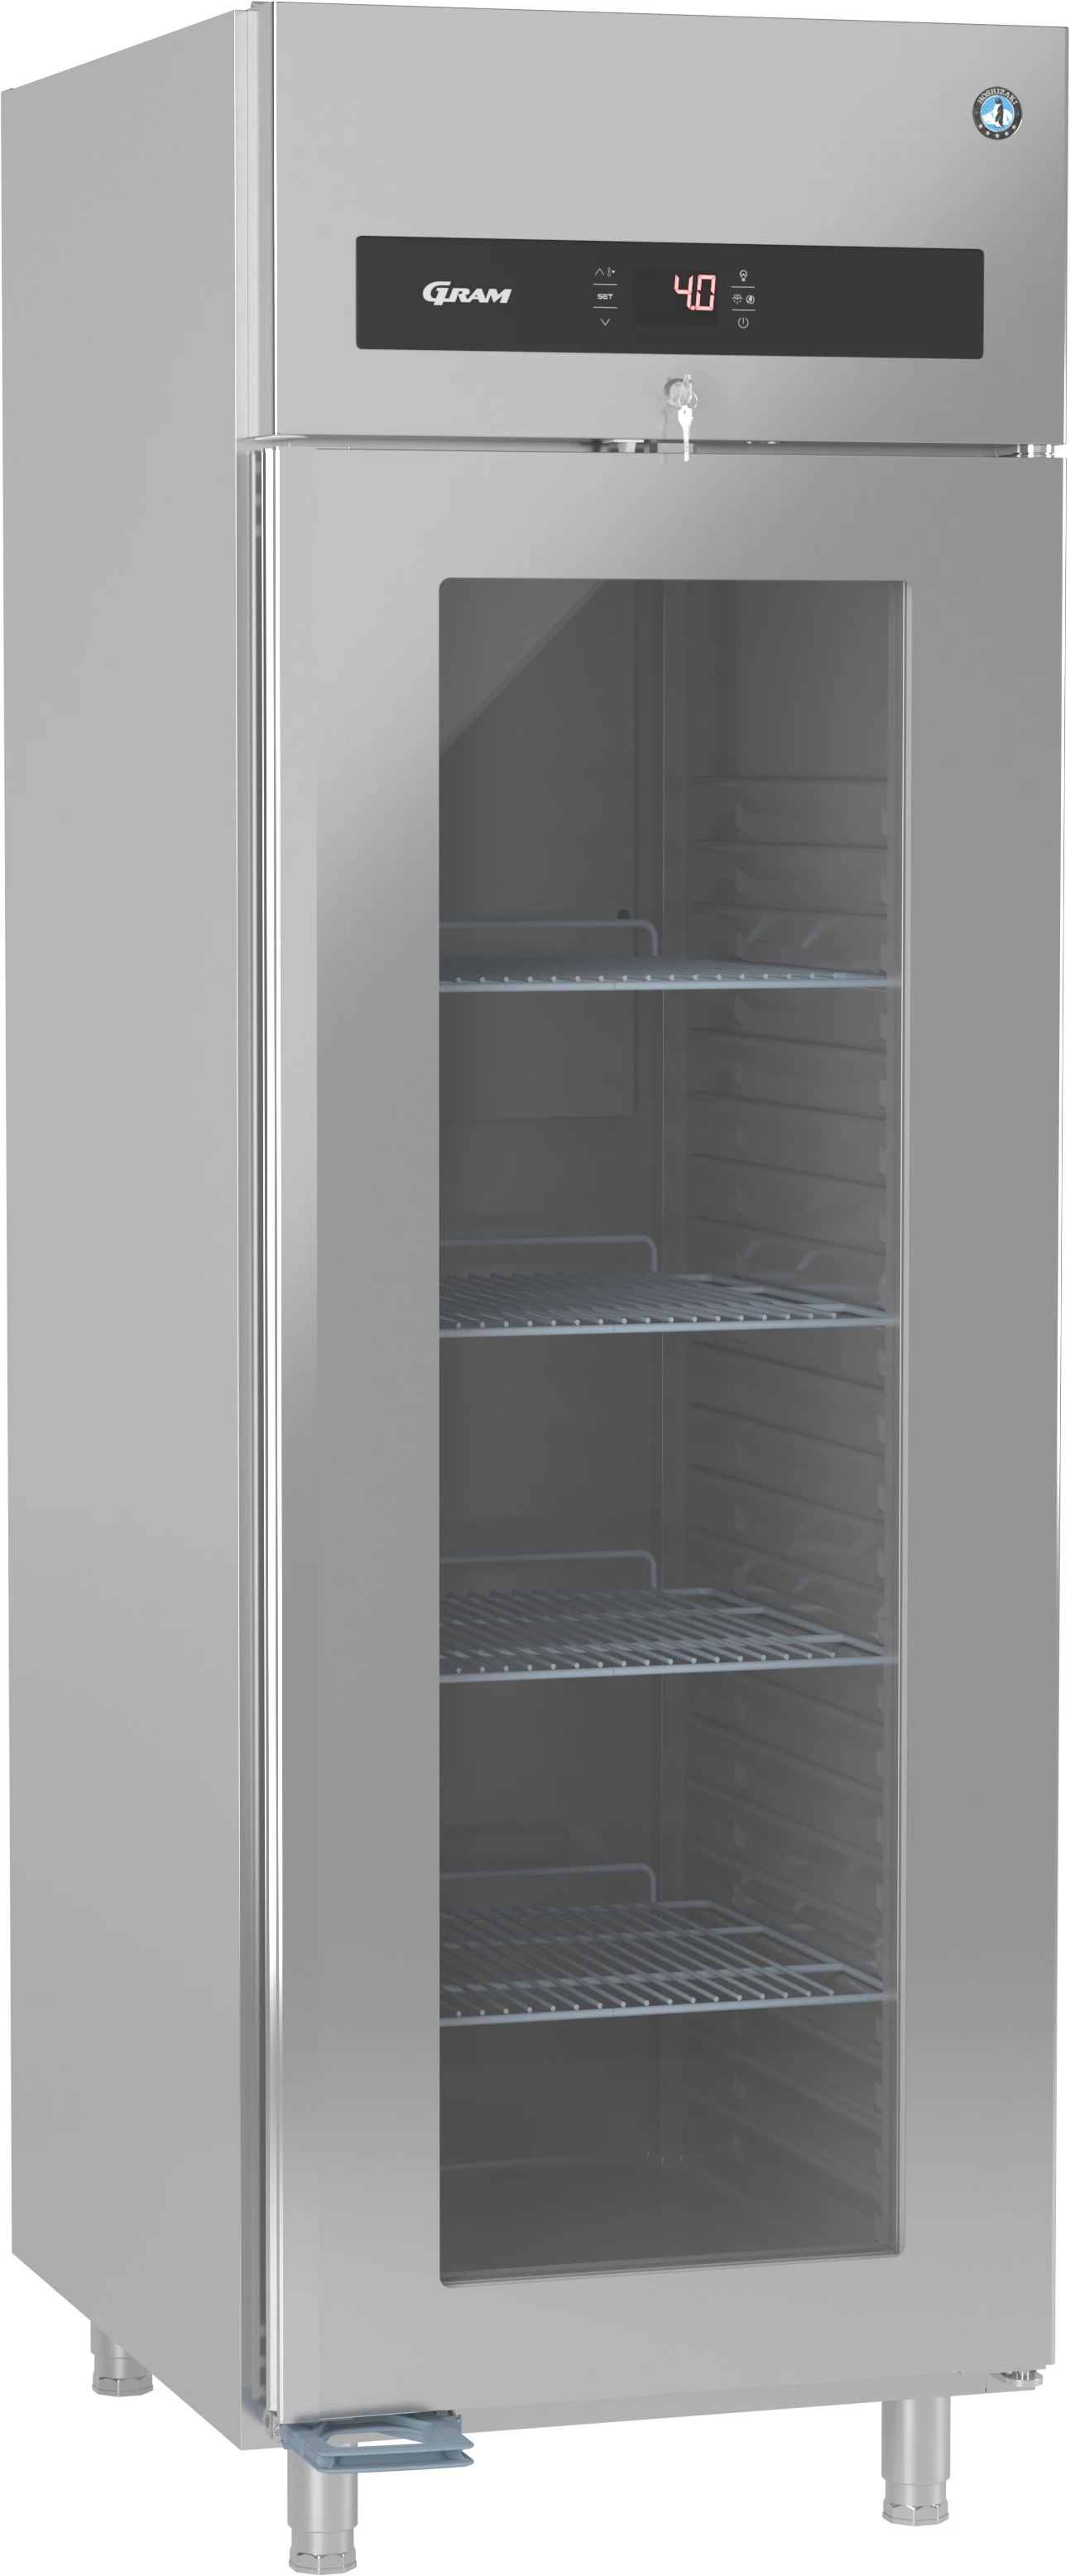 Gram Premier KG70 L DR køleskab